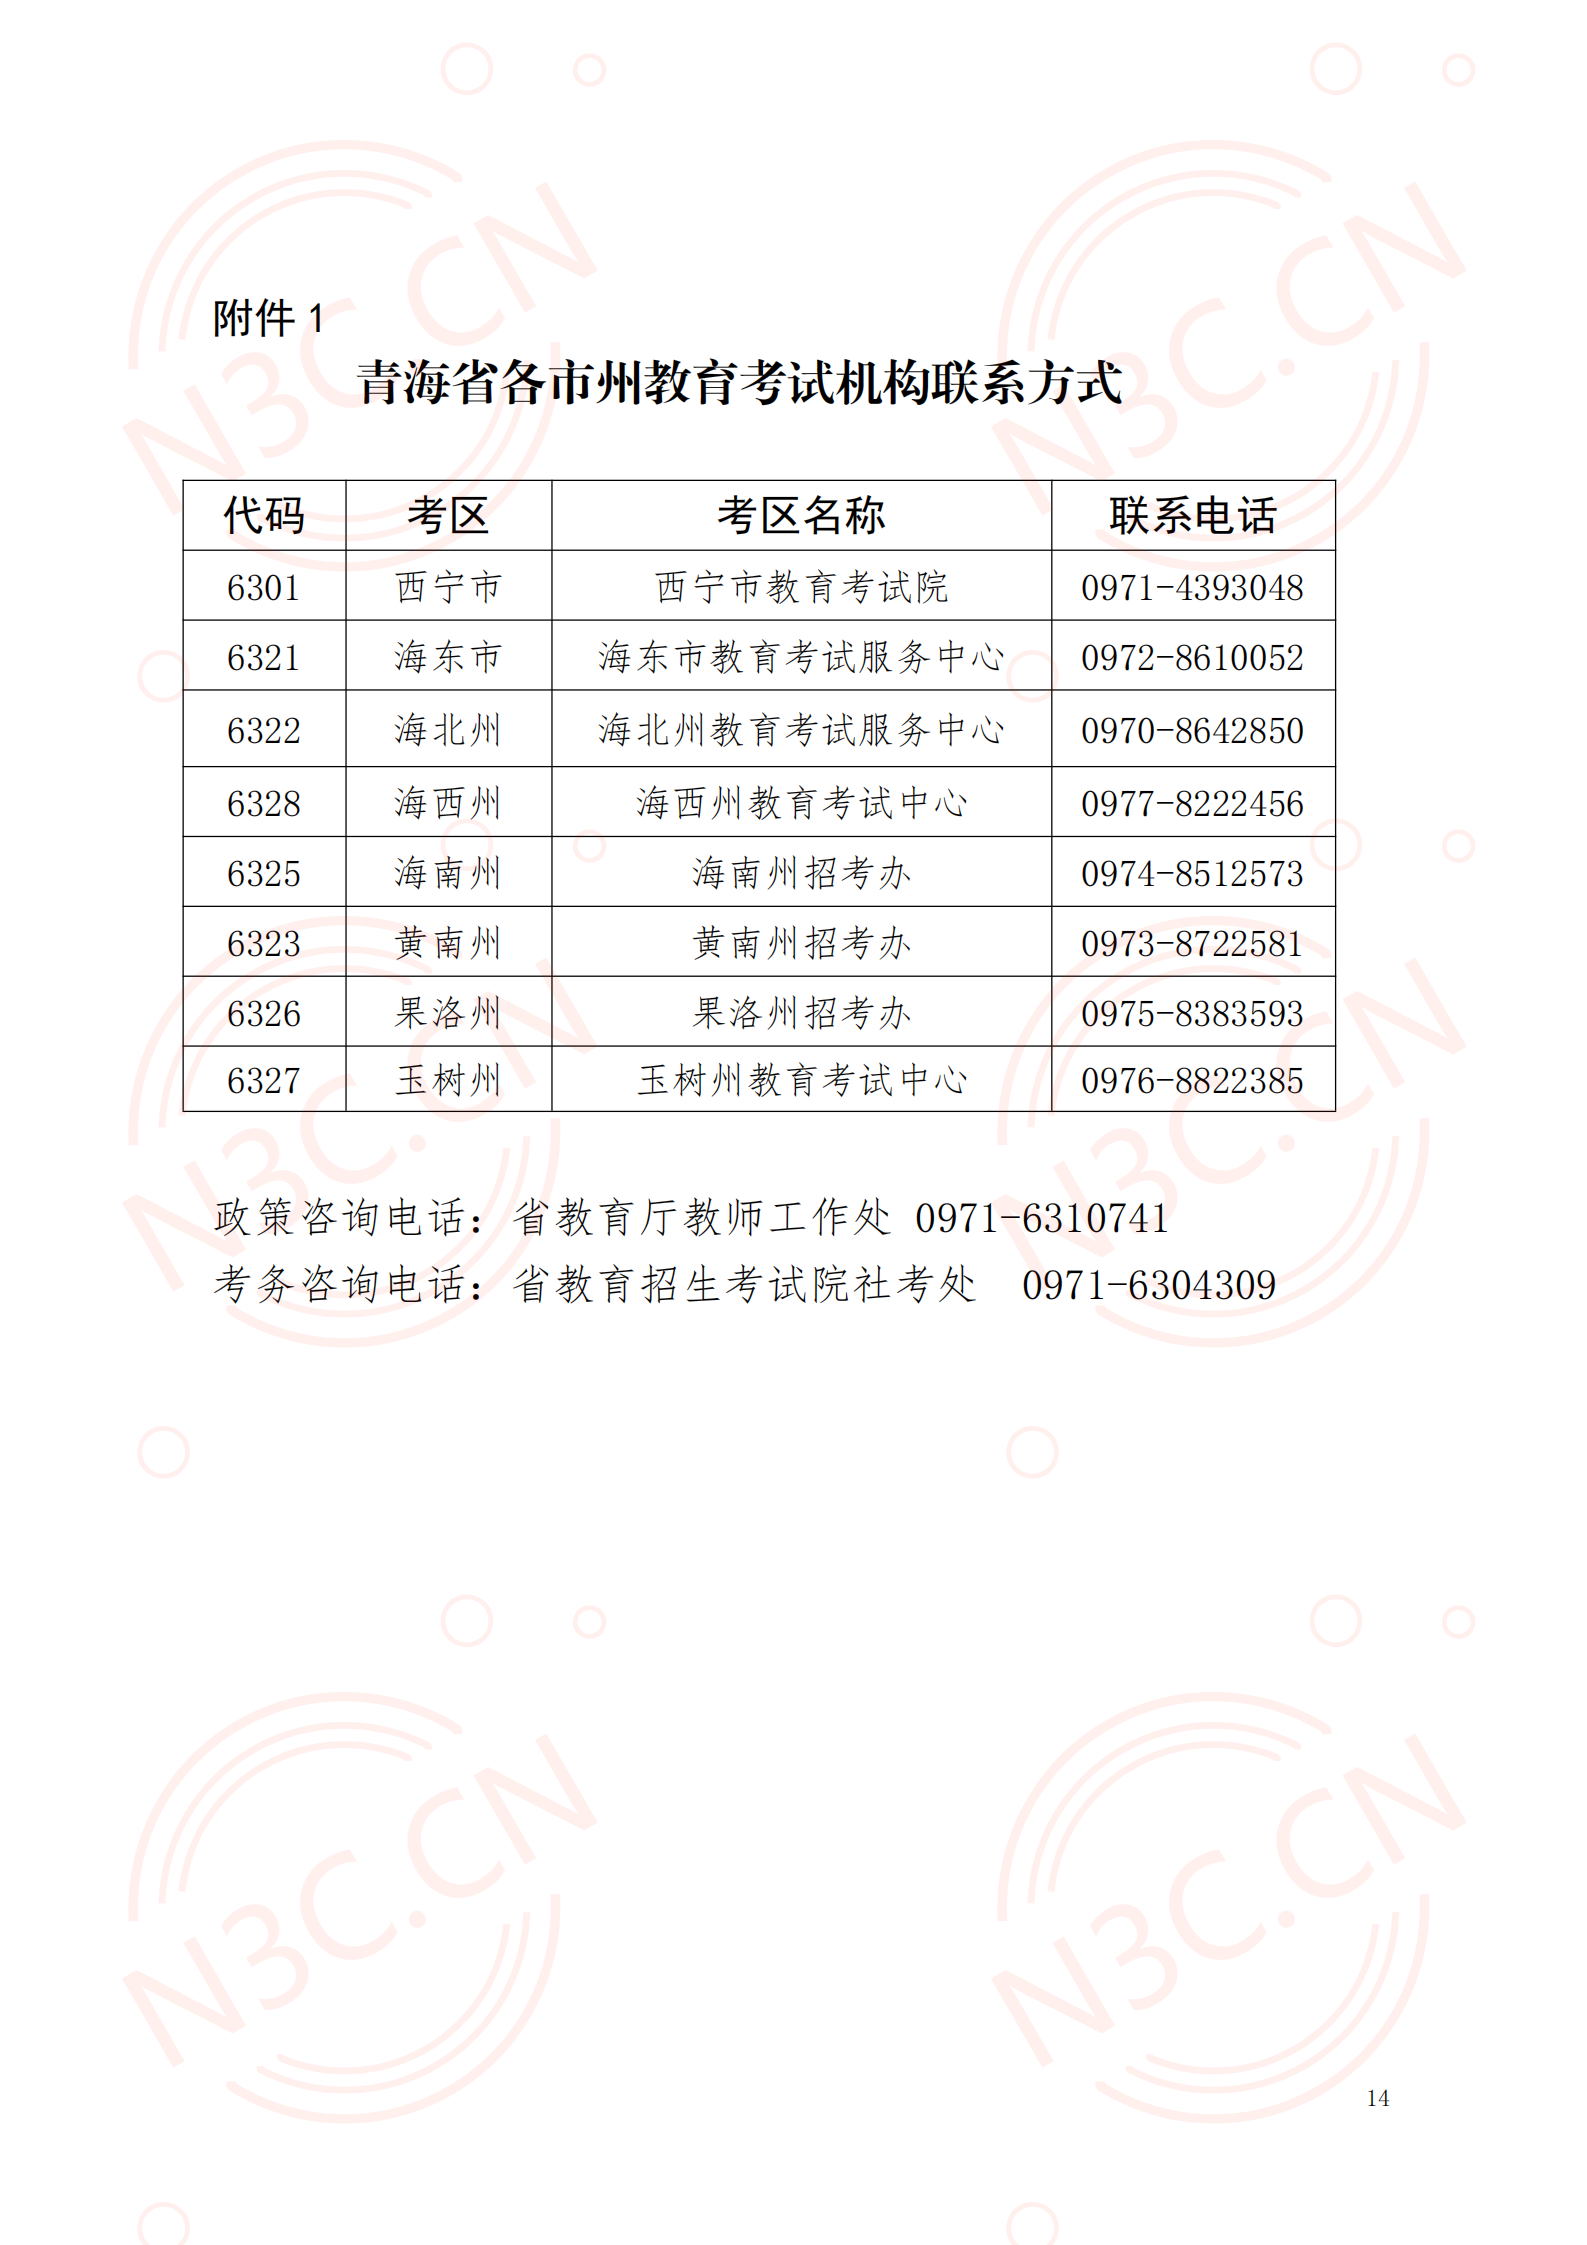 青海2020年下半年中小学教师资格考试（笔试）报名公告(图14)